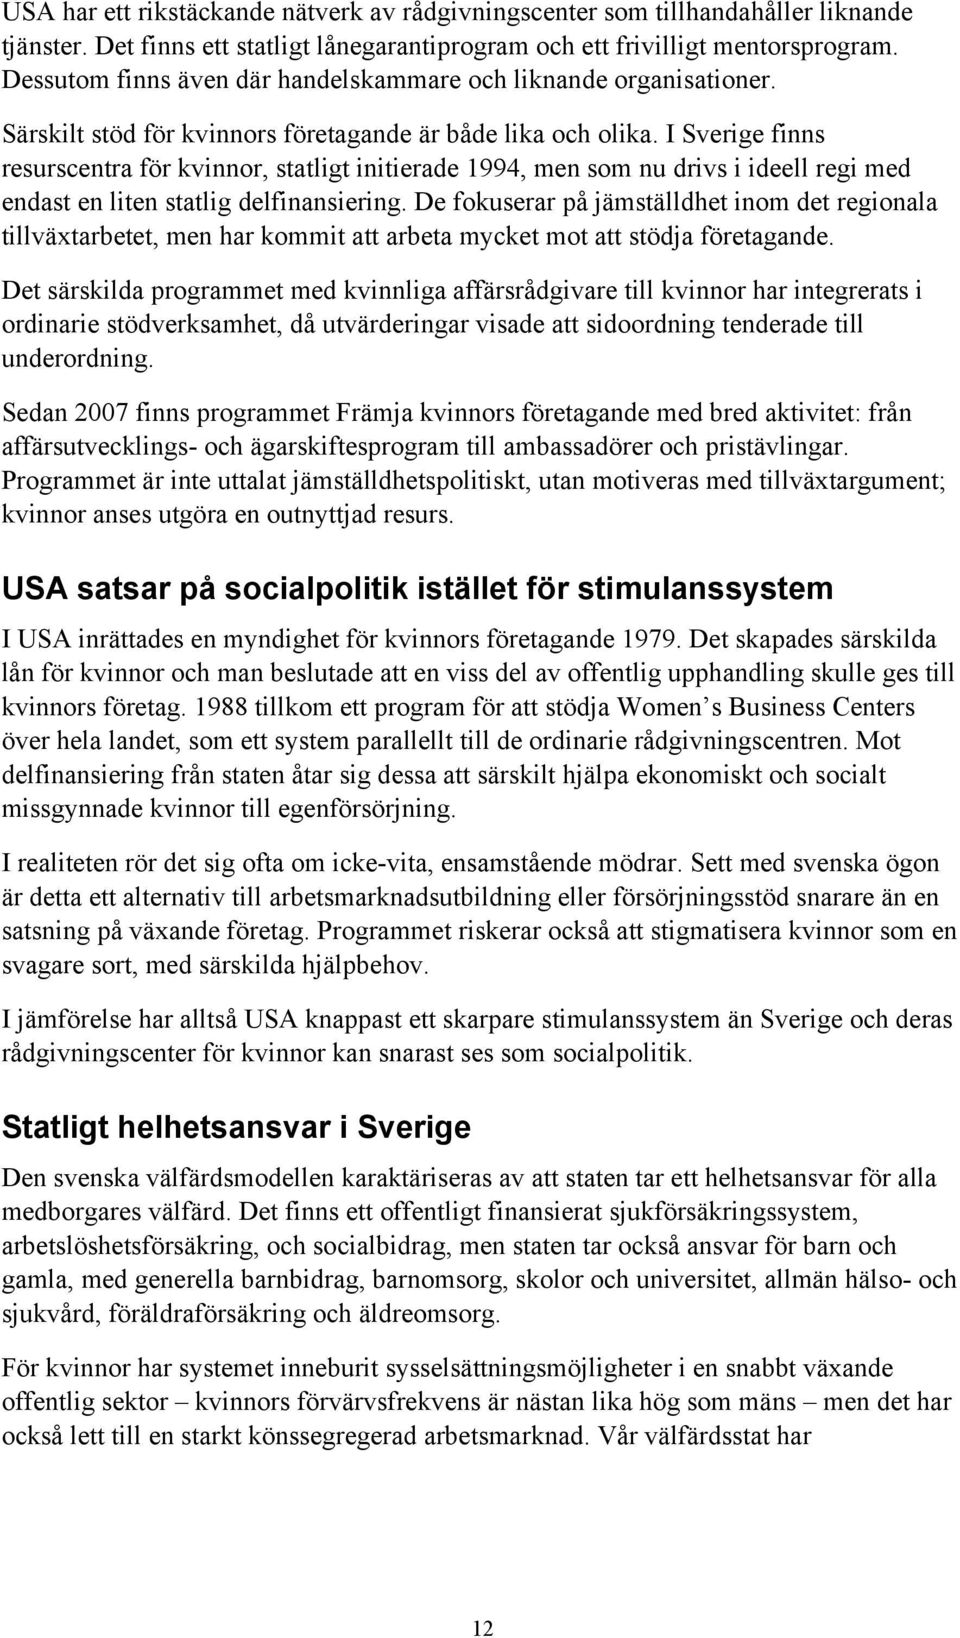 I Sverige finns resurscentra för kvinnor, statligt initierade 1994, men som nu drivs i ideell regi med endast en liten statlig delfinansiering.